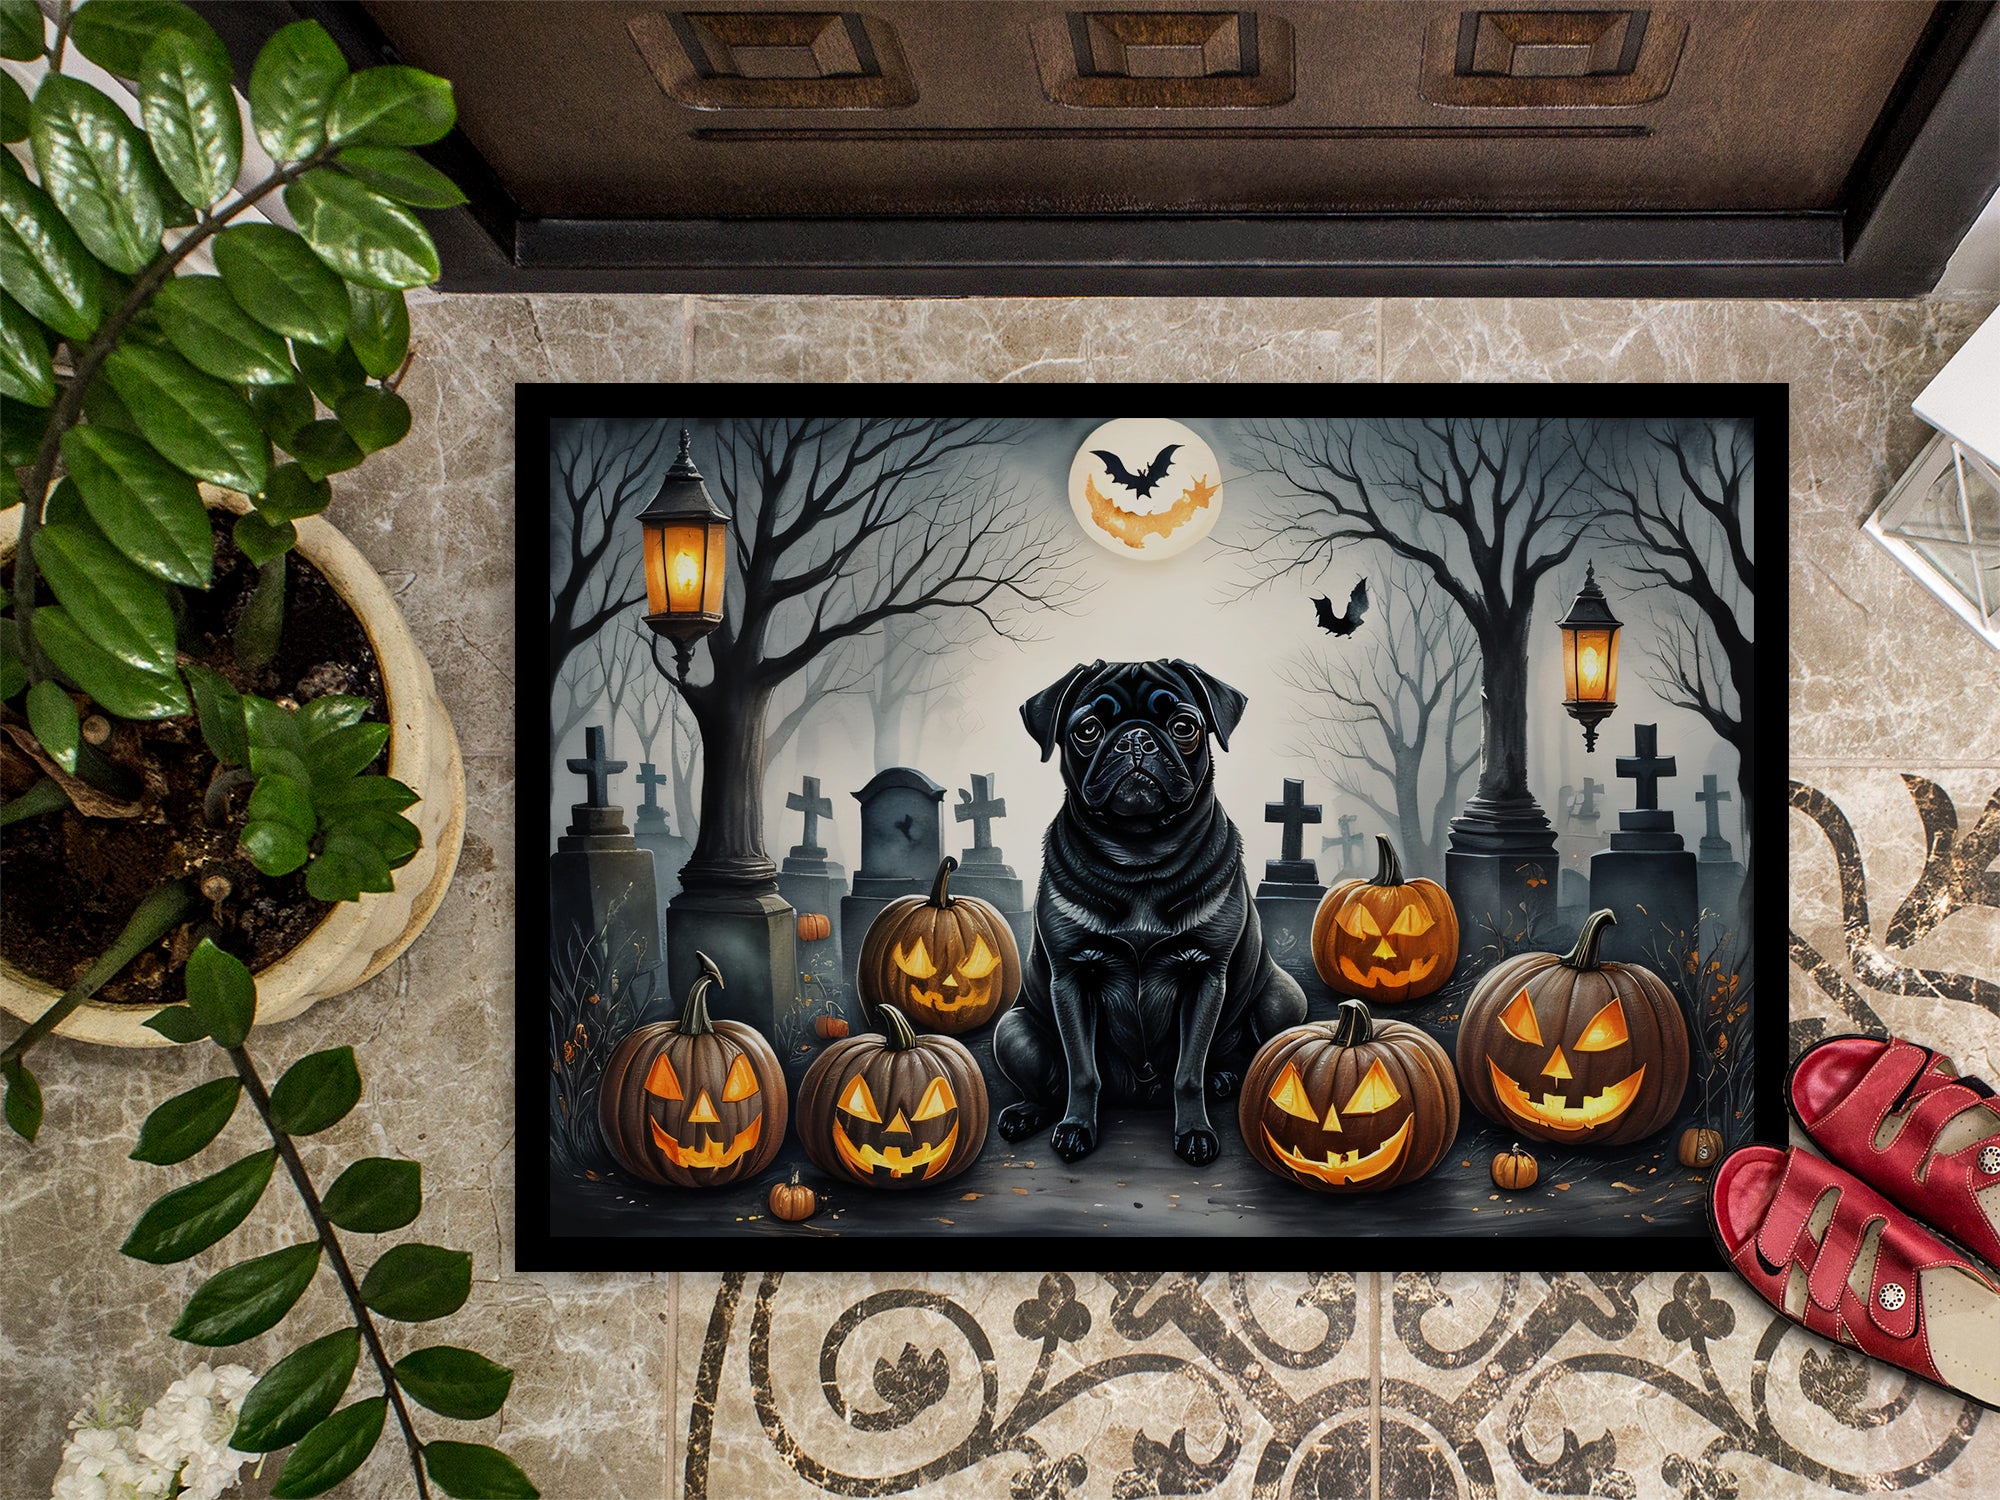 Black Pug Spooky Halloween Doormat 18x27  the-store.com.